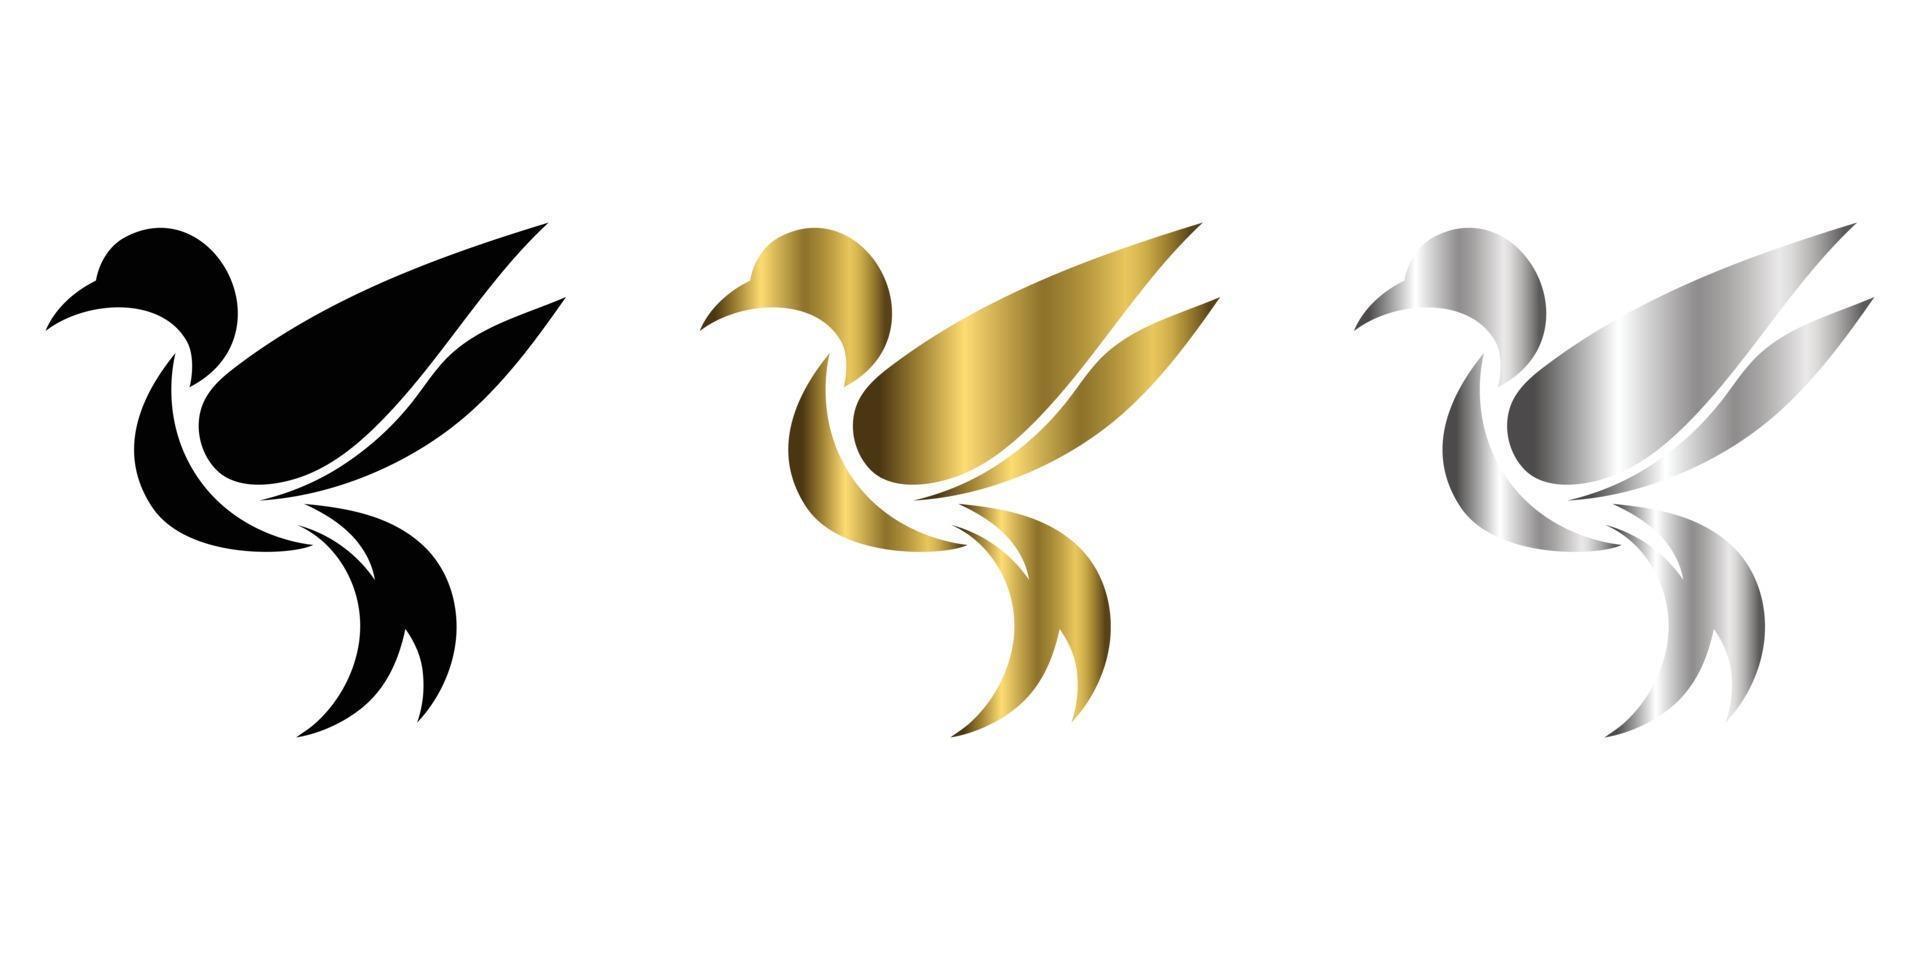 tre colori nero oro argento illustrazione vettoriale su uno sfondo bianco di colibrì volante adatto per creare loghi